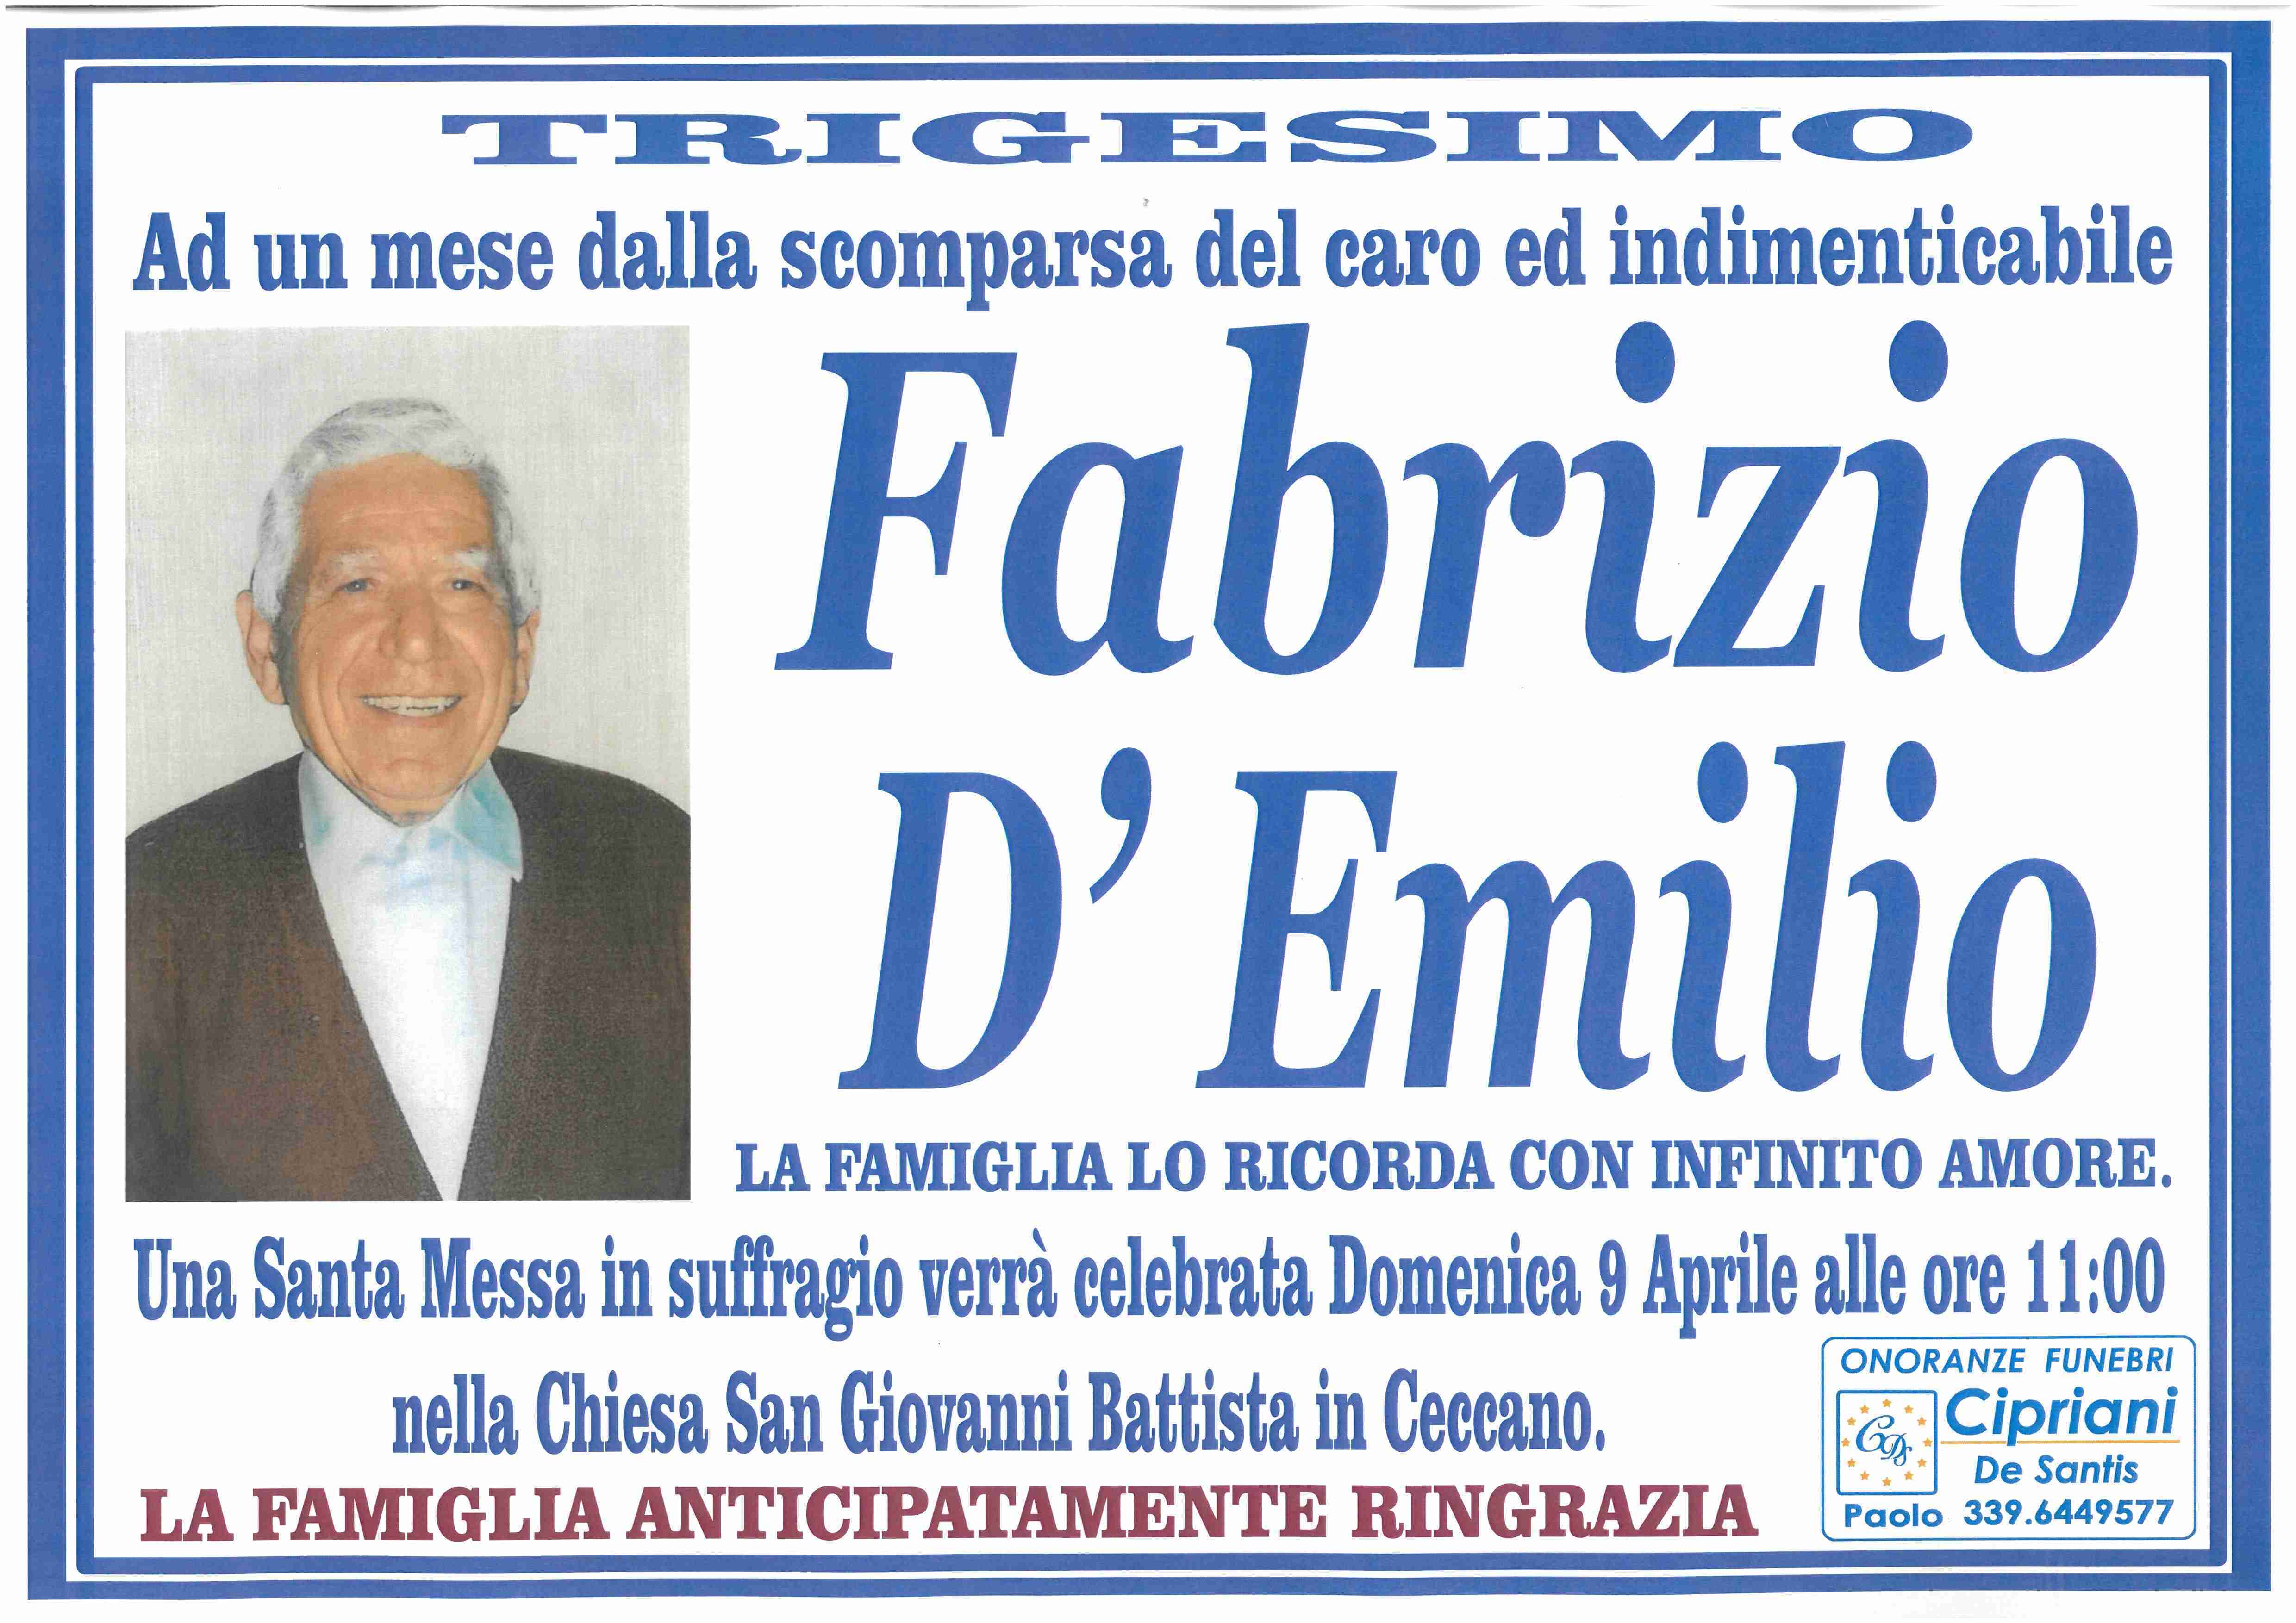 Fabrizio D'Emilio